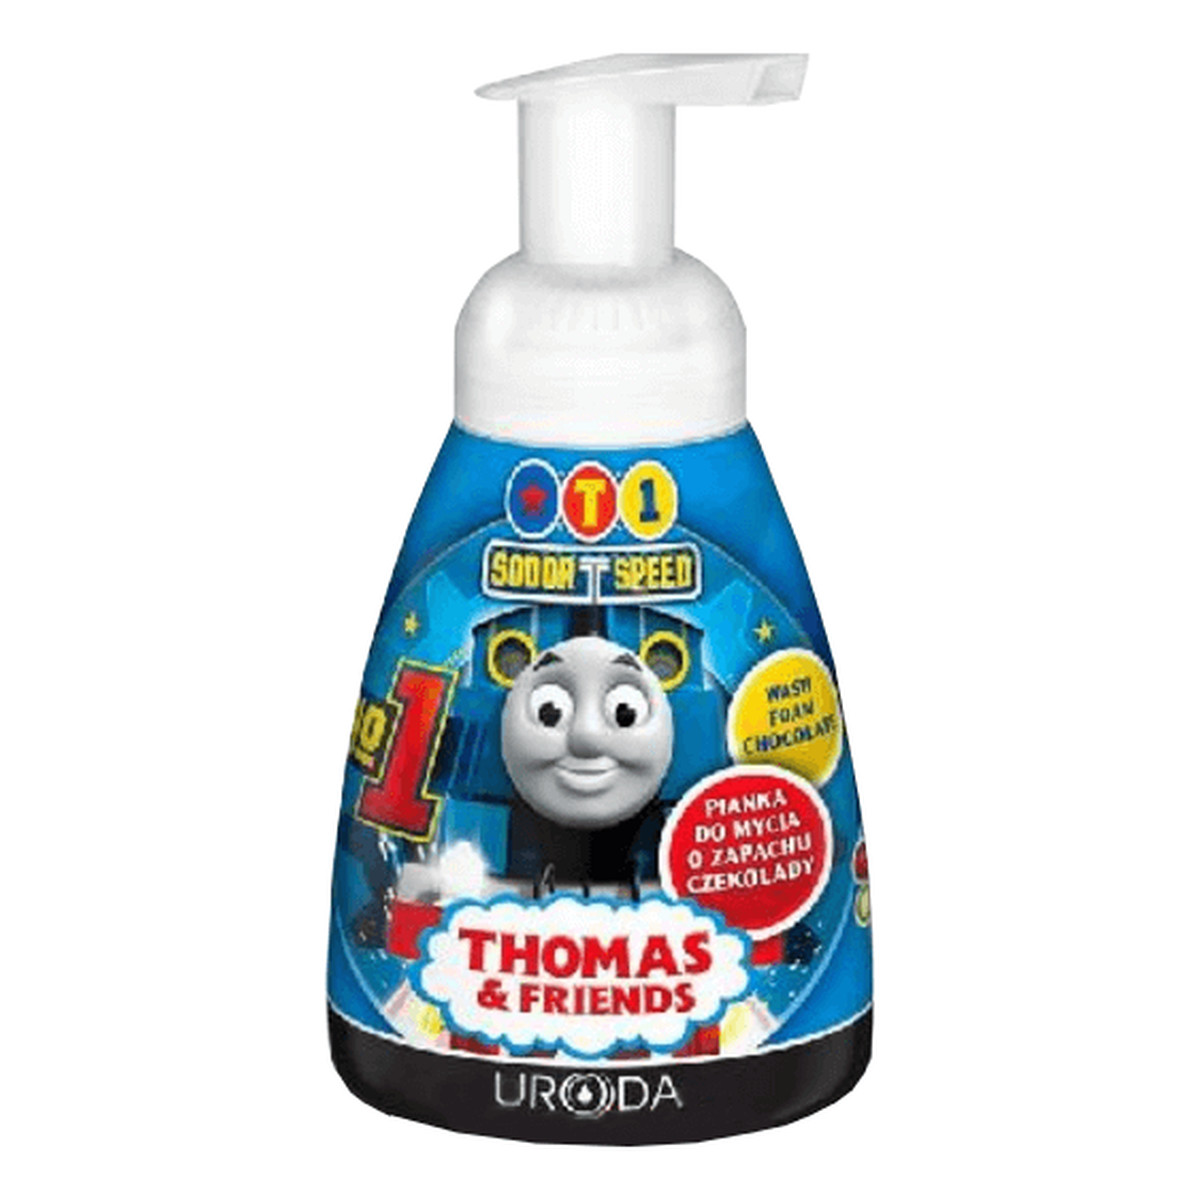 Bi-es Disney Thomas & Friends pianka do mycia dla dzieci o zapachu czekolady 250ml